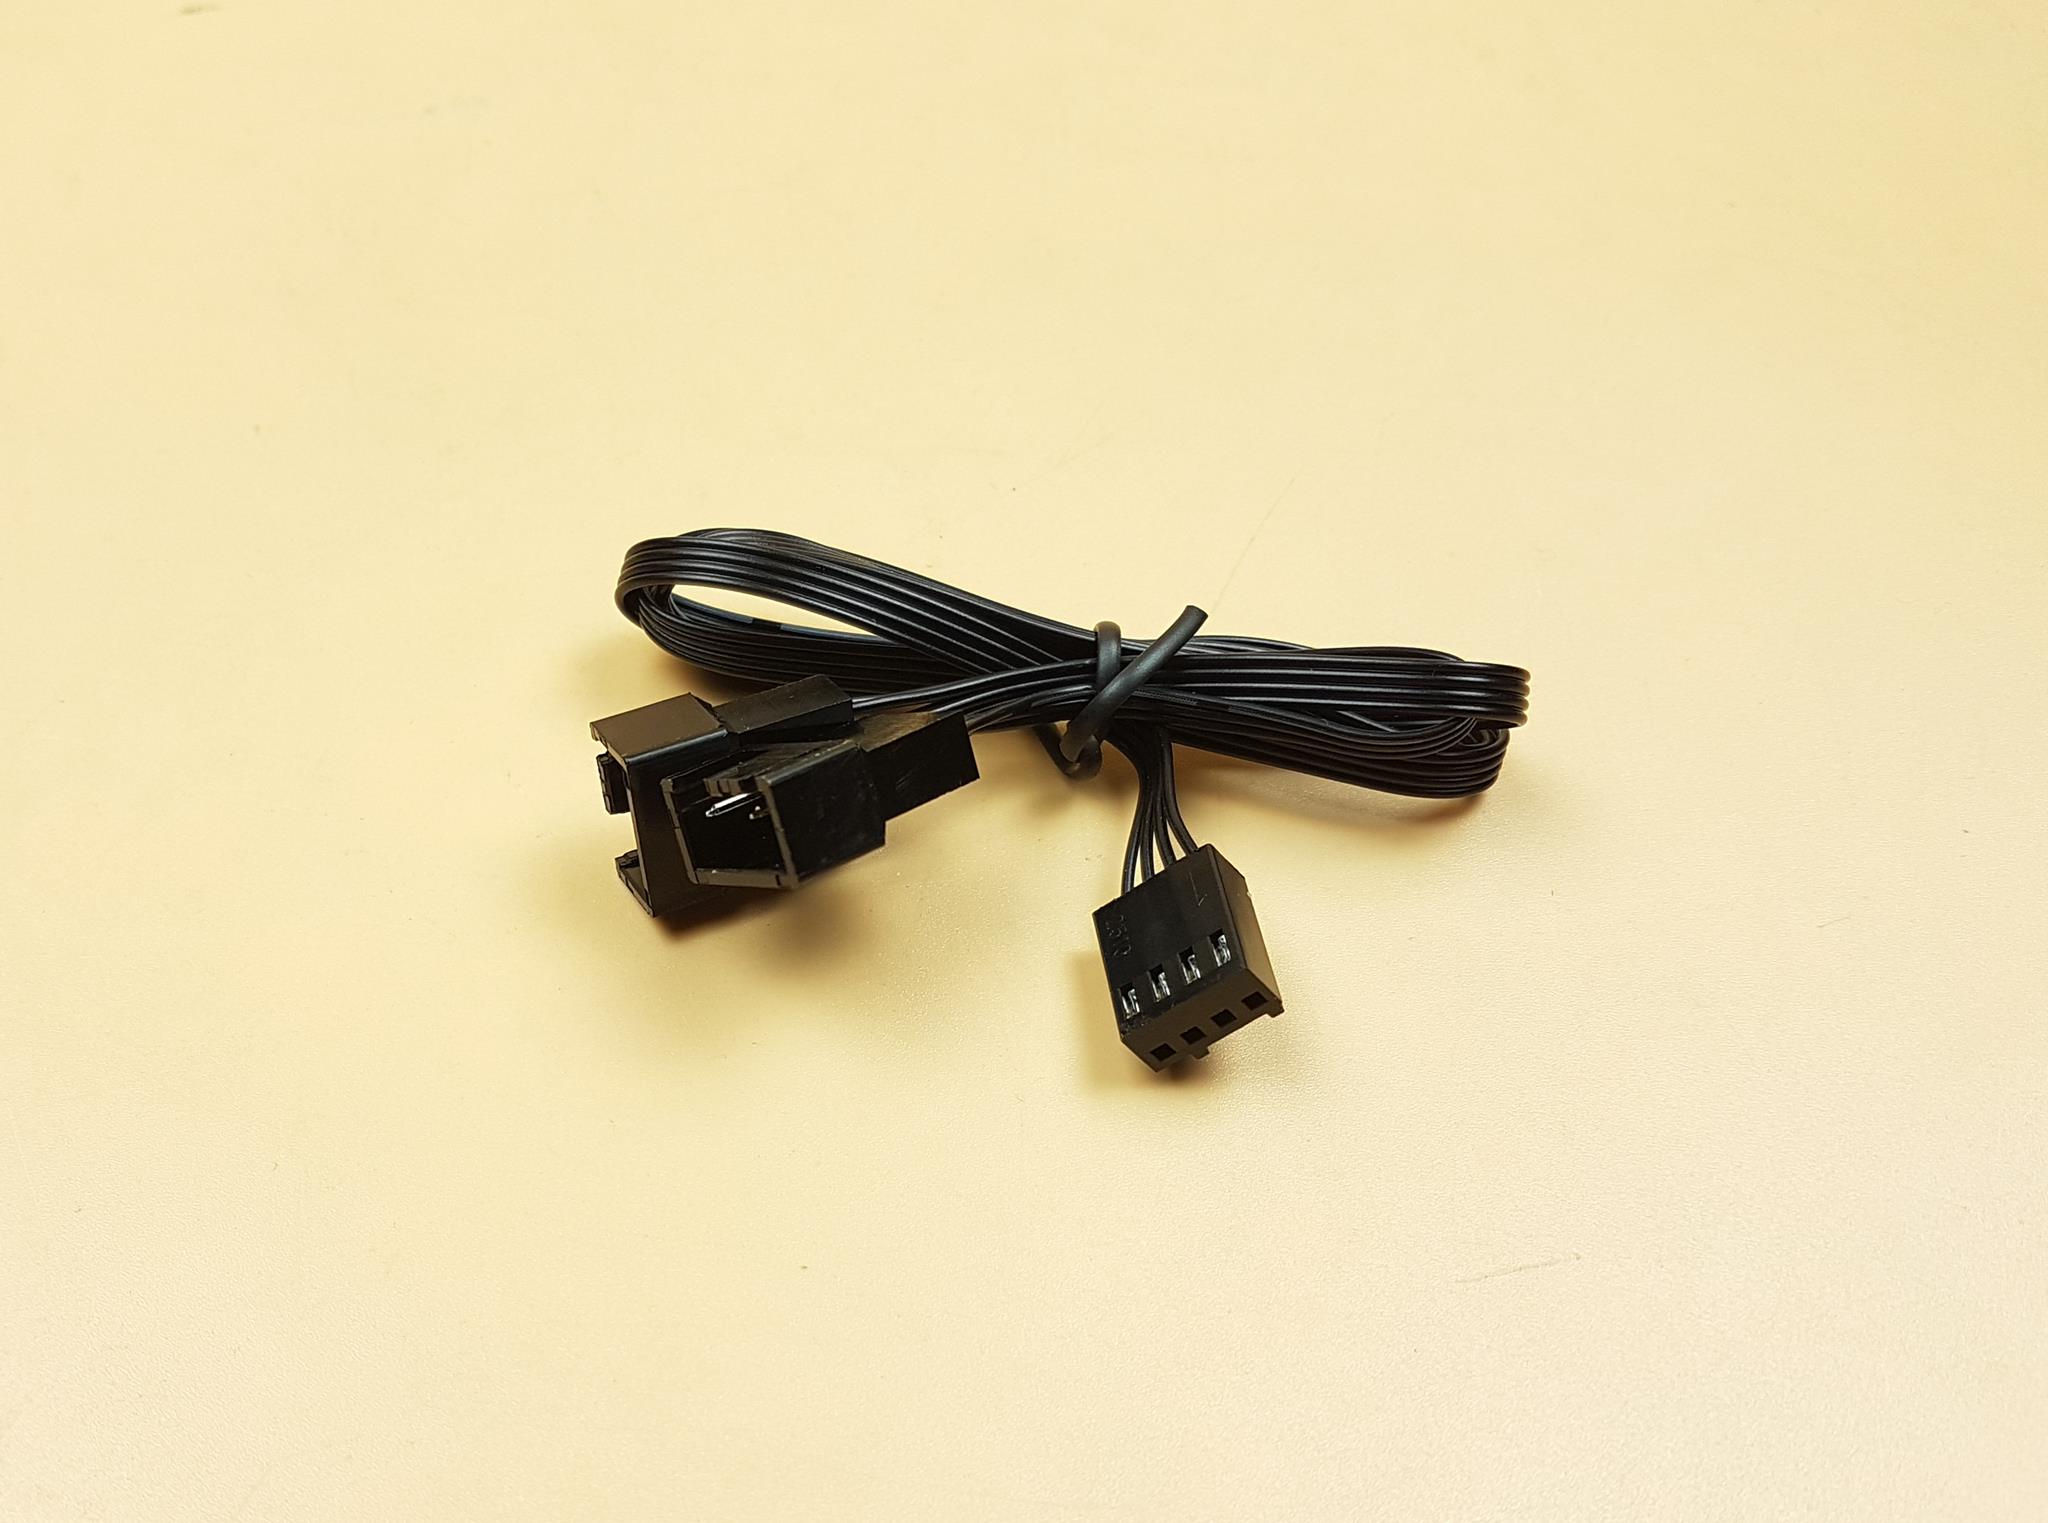 DeepCool AS500 Plus 4-pin fan connectors